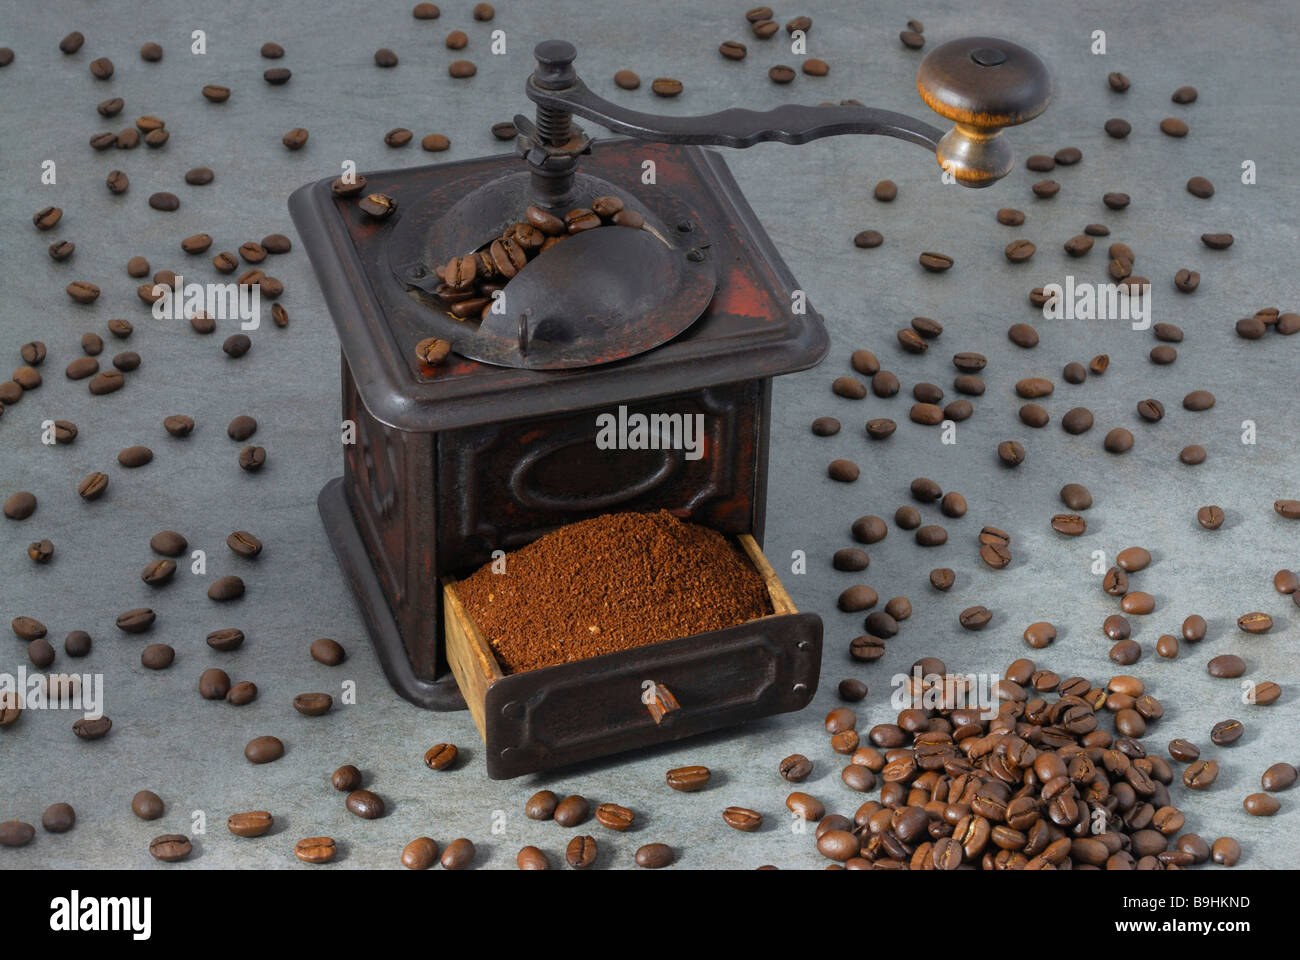 Metallo antico mulino di caffè con un cassetto pieno di caffè macinato, stando in piedi in mezzo sparsi i chicchi di caffè Foto Stock